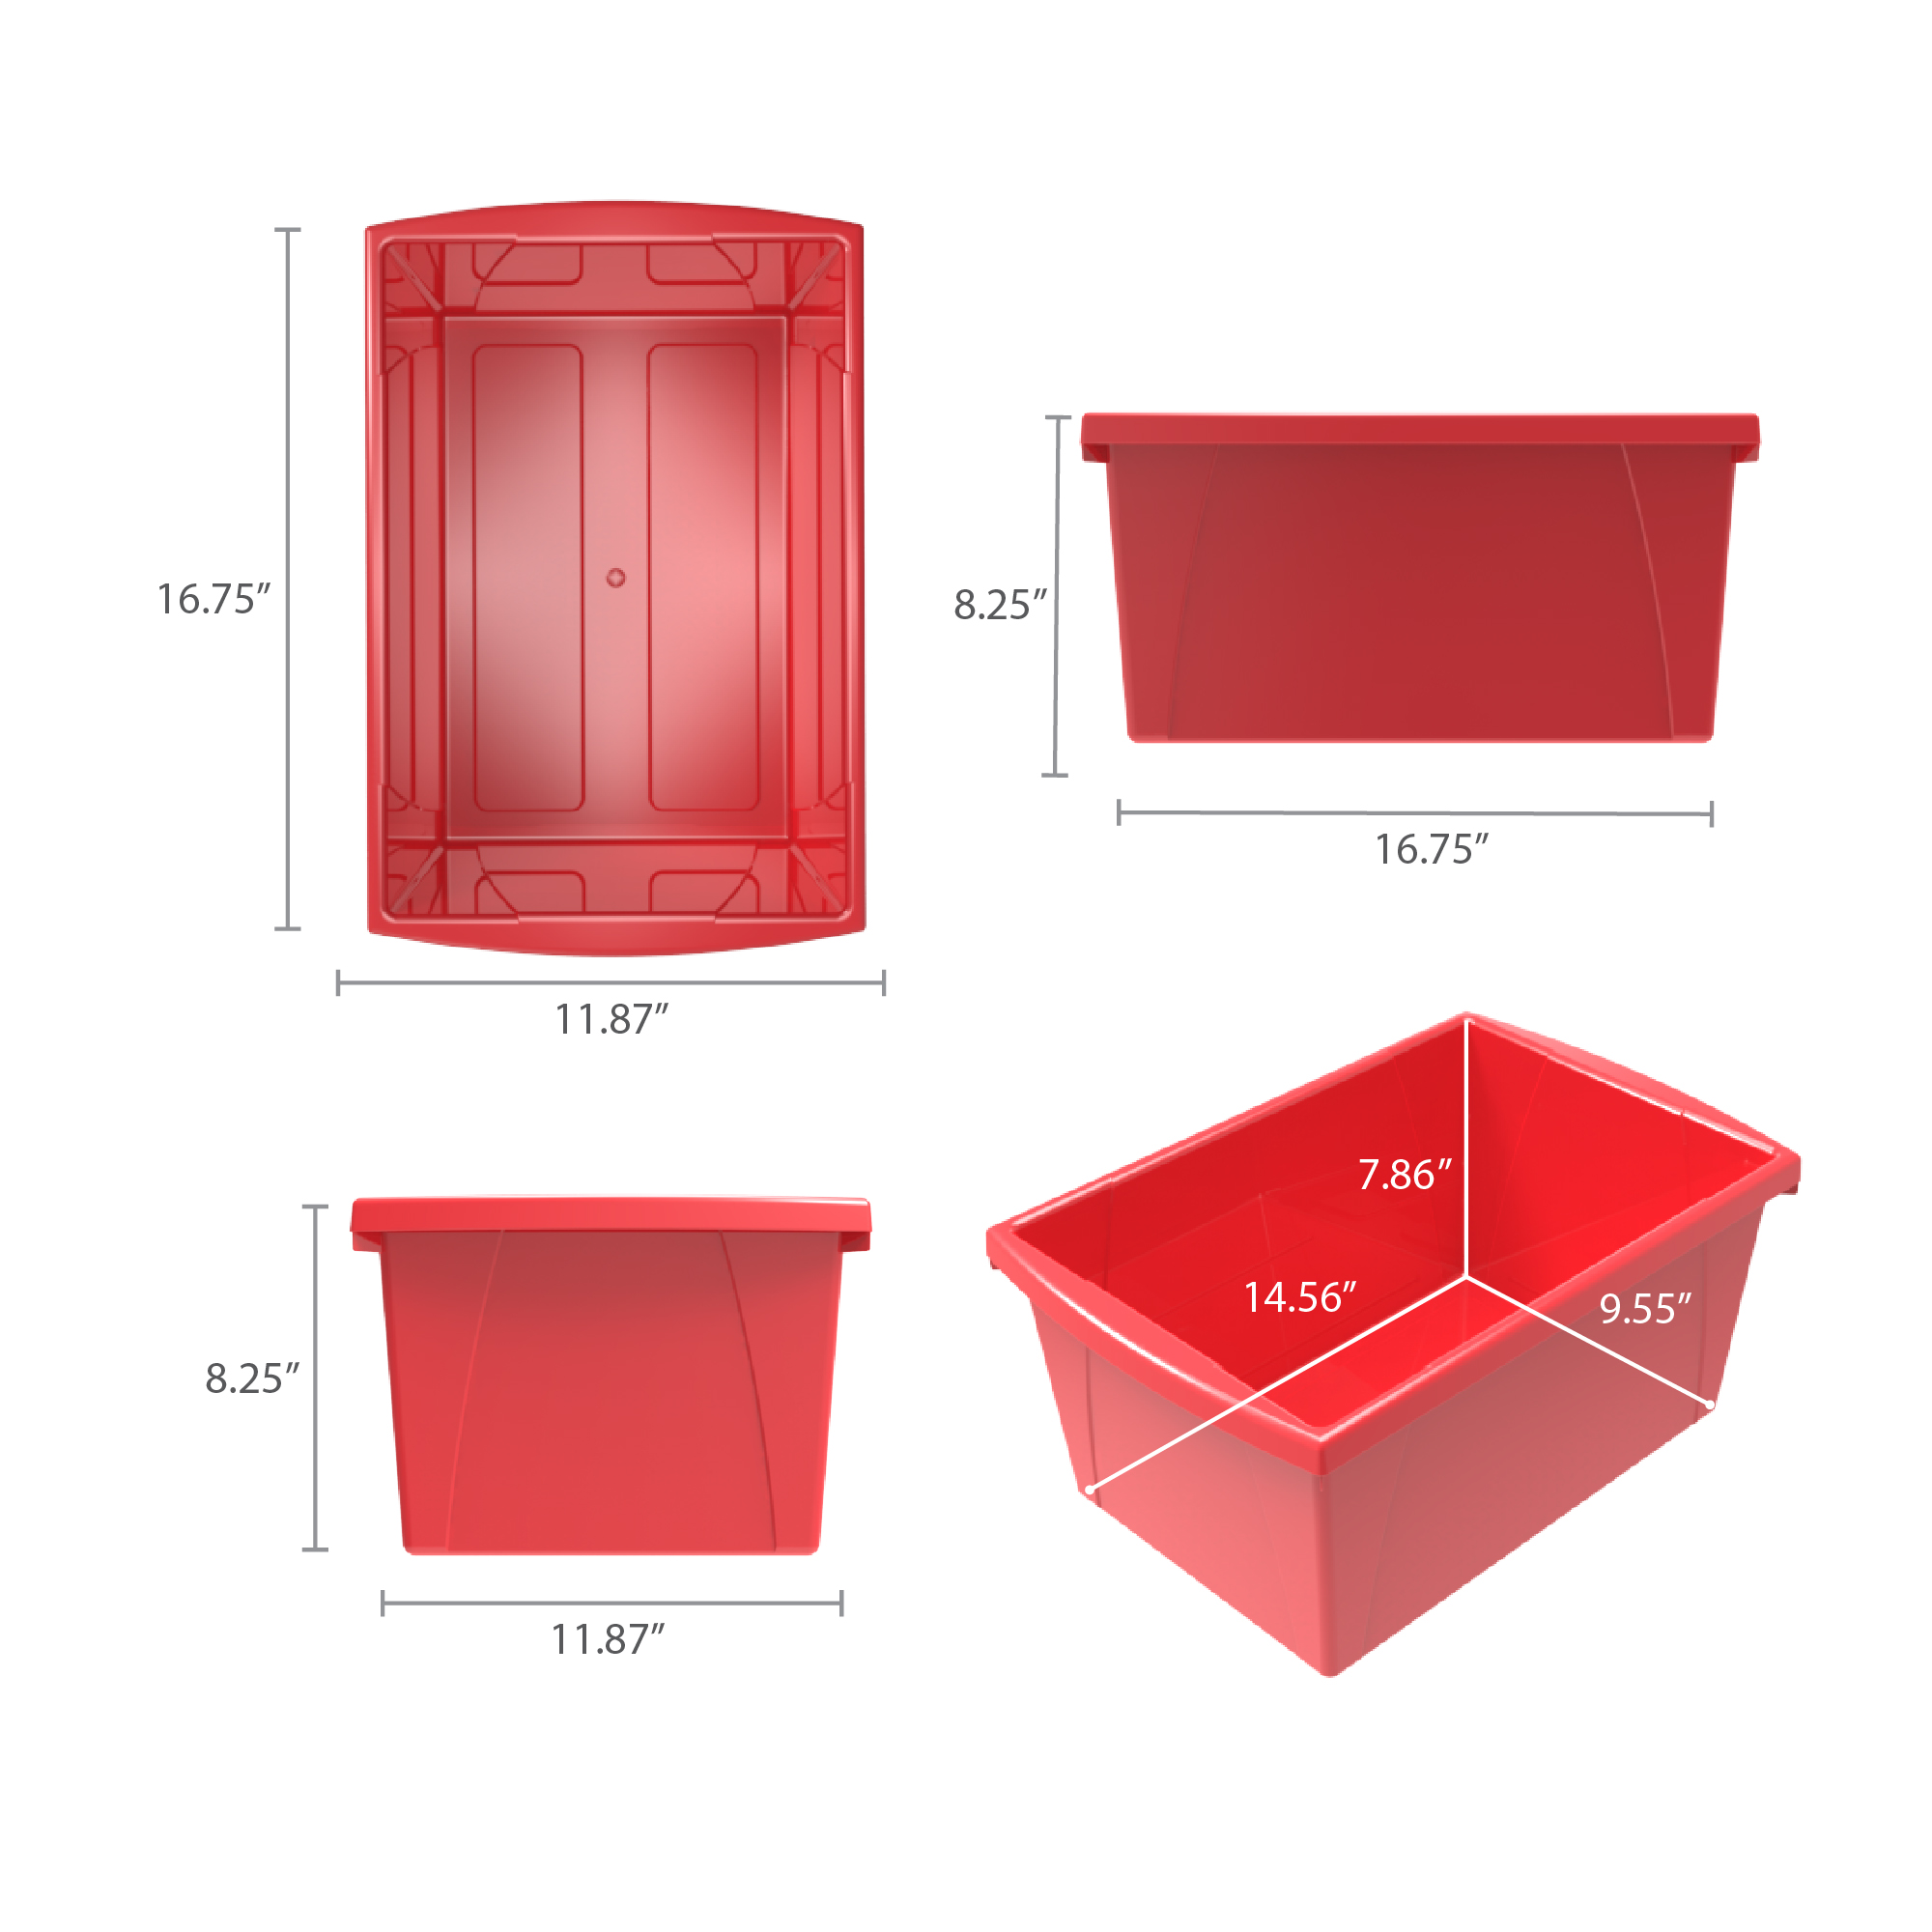 Storex 4 Gallon Storage Bin, Red, Pack of 3